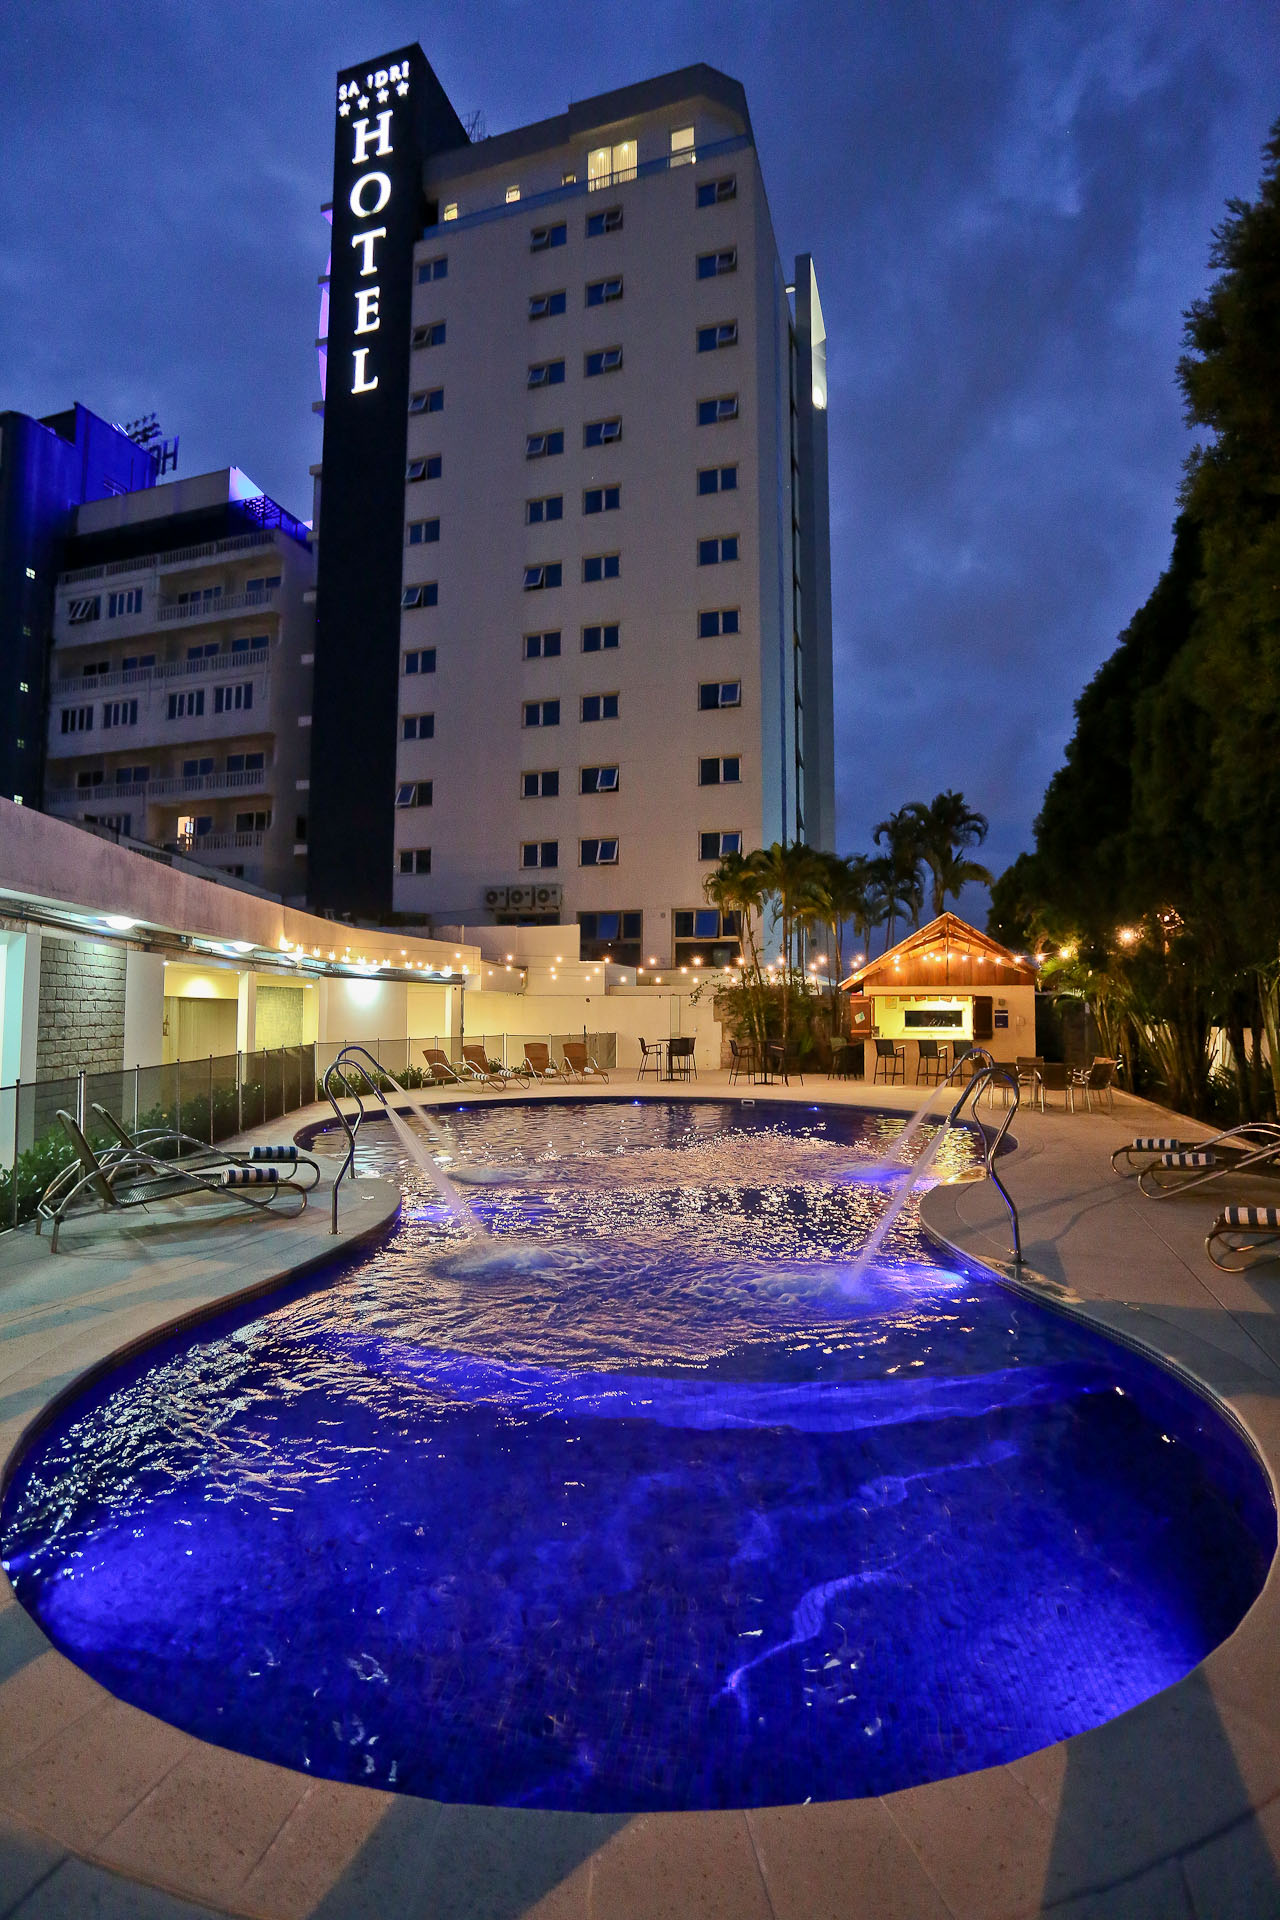 Sandri Palace Hotel - Itajaí image